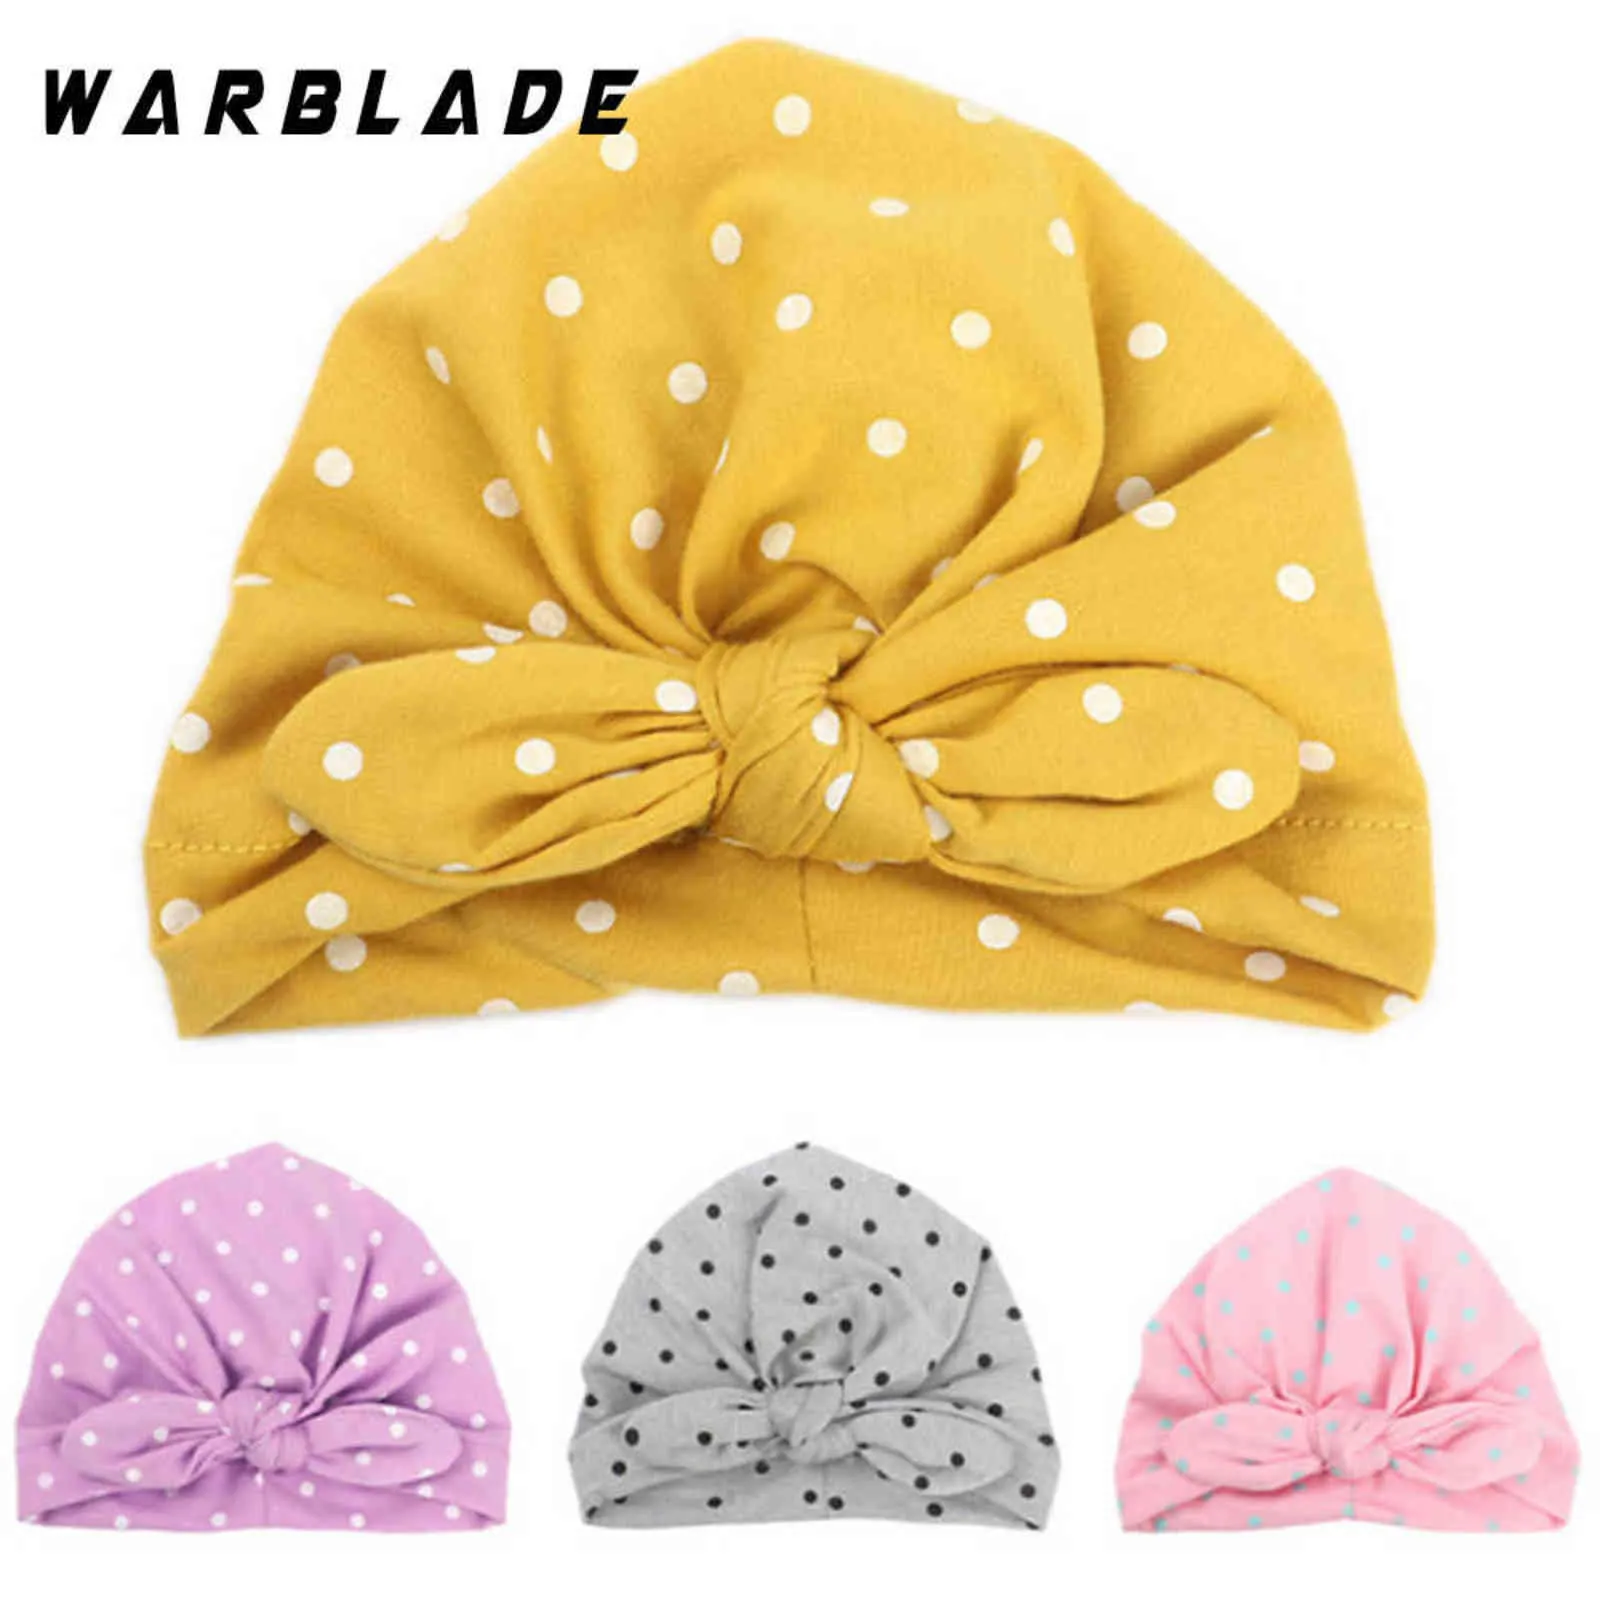 Warblade 2018 Tatlı Nokta Bebek Kız Şapka Yay Ile Şeker Renk Bebek Türban Kap Kızlar için Elastik Aksesuarları 1 ADET Y21111